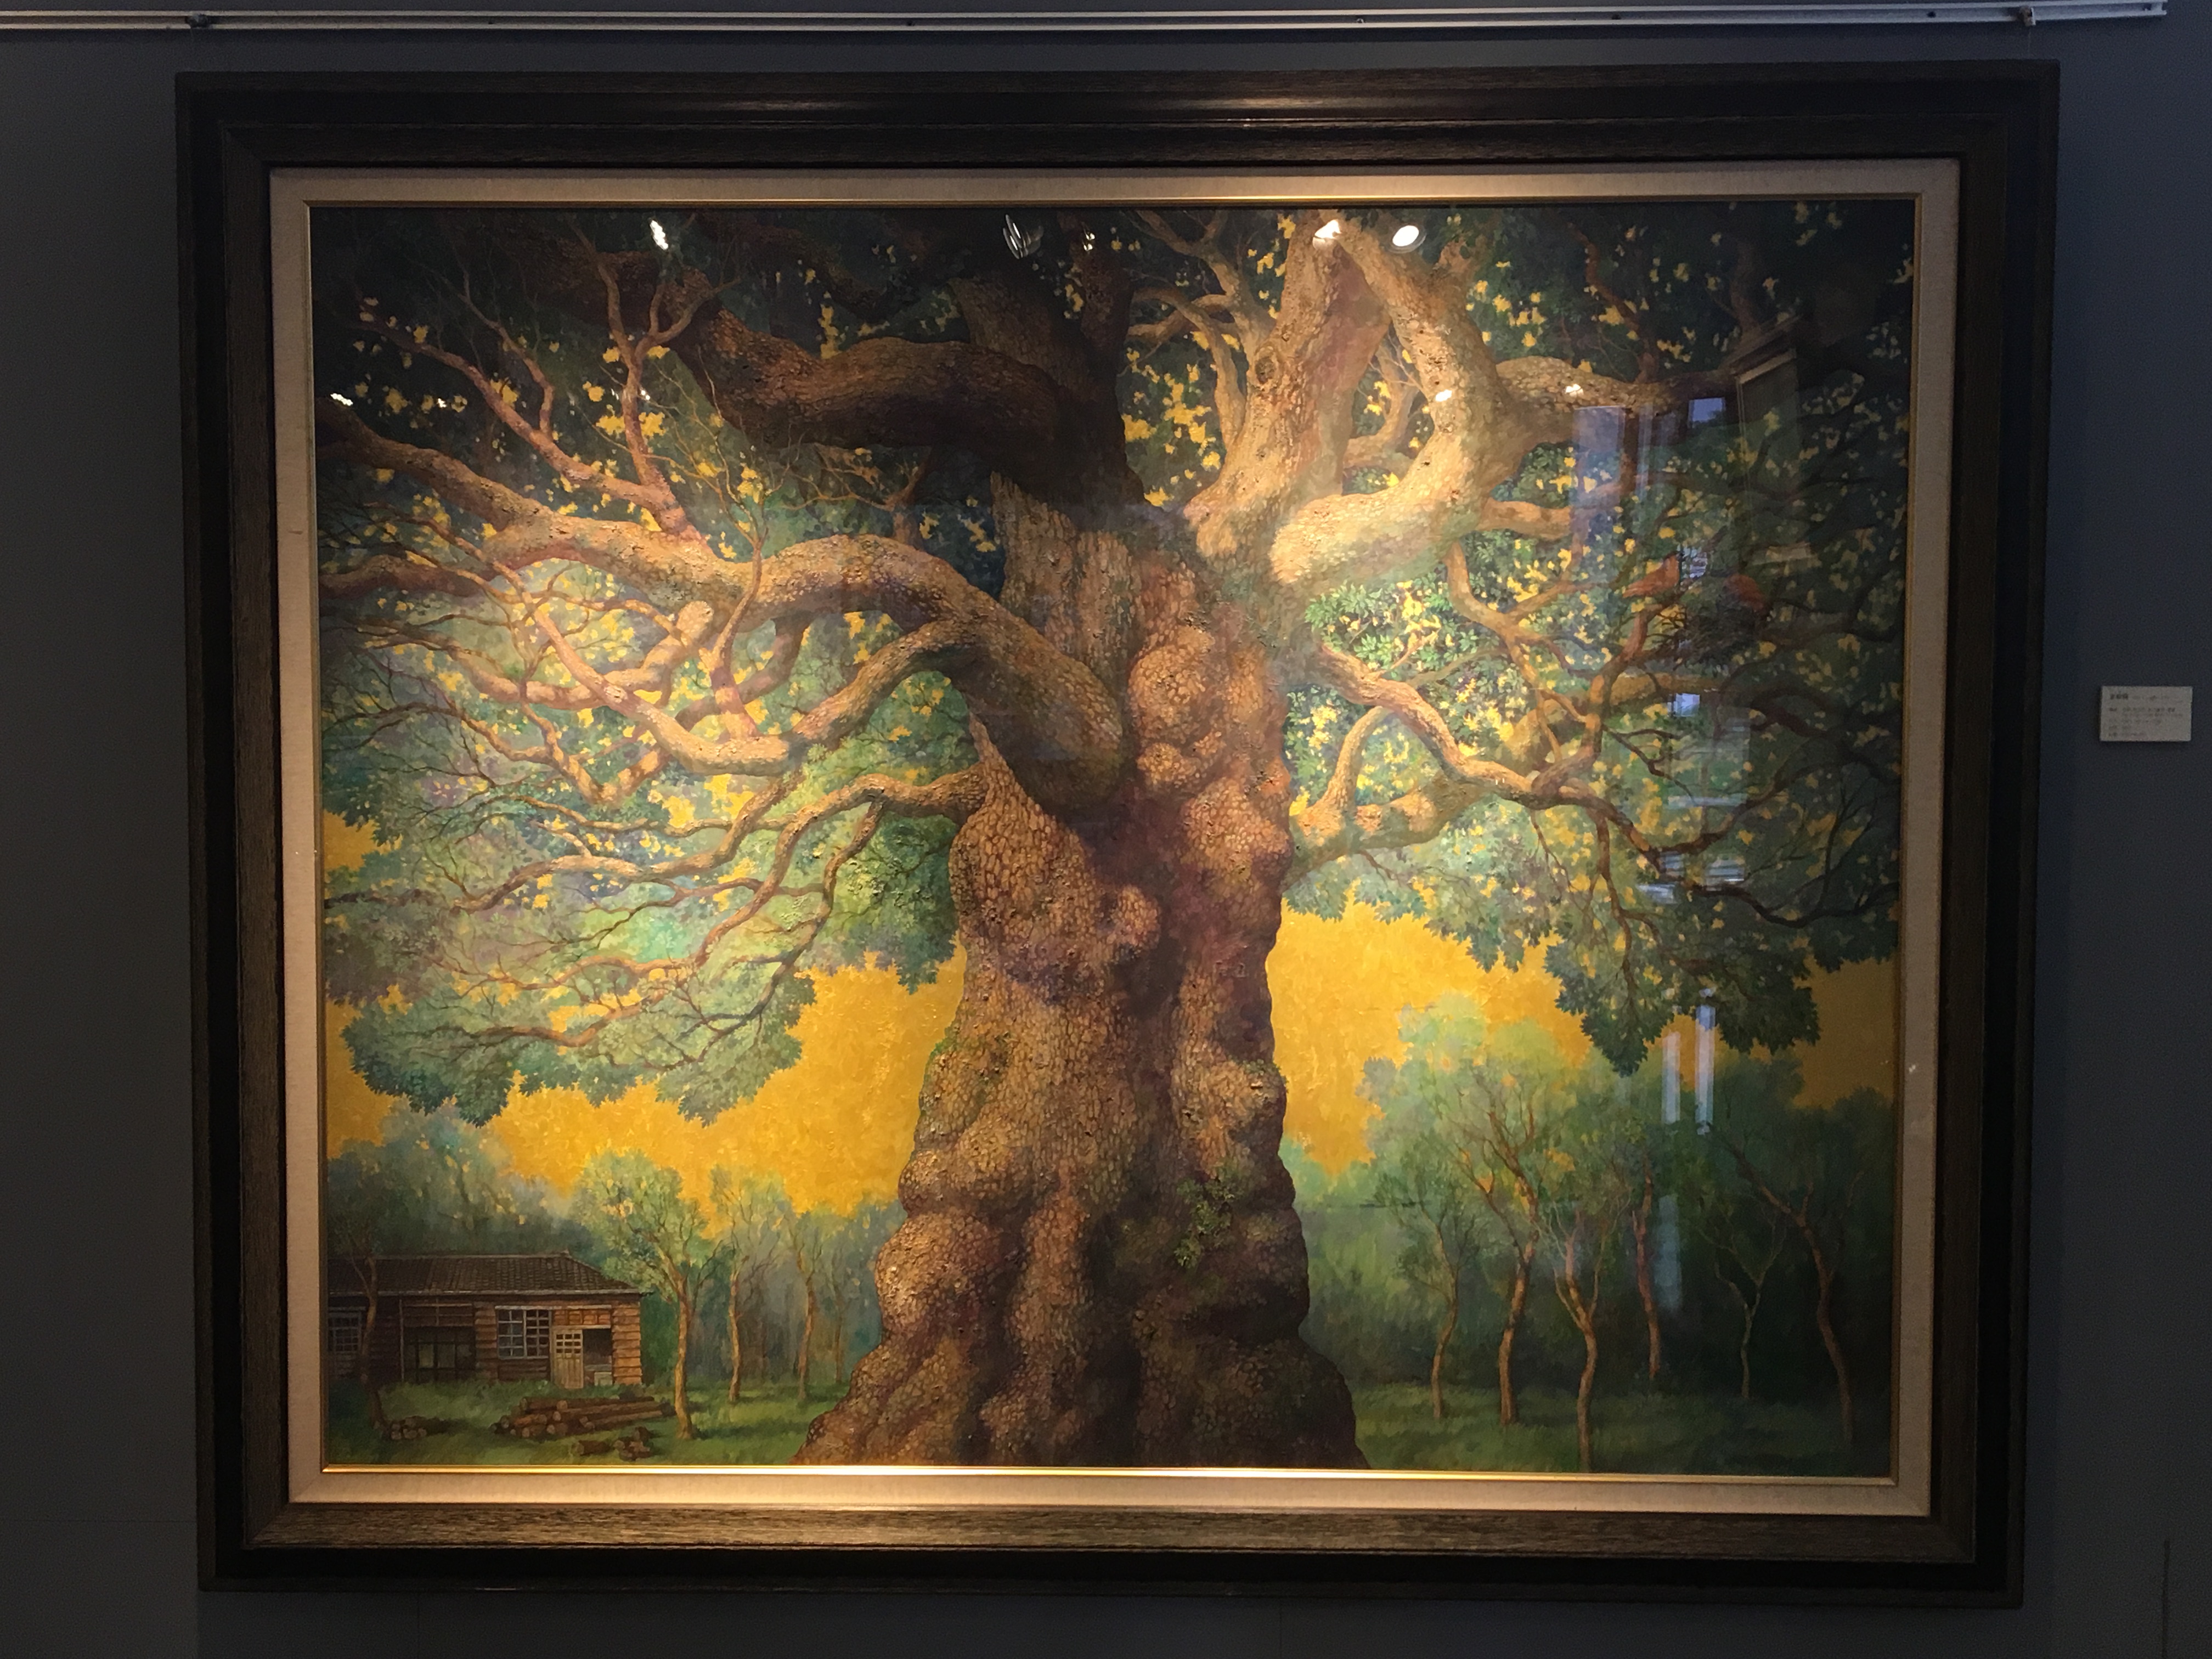 劉子平，《老樟樹》，130 x 162 cm，油彩、壓克力、綜合媒材、畫布，2019。